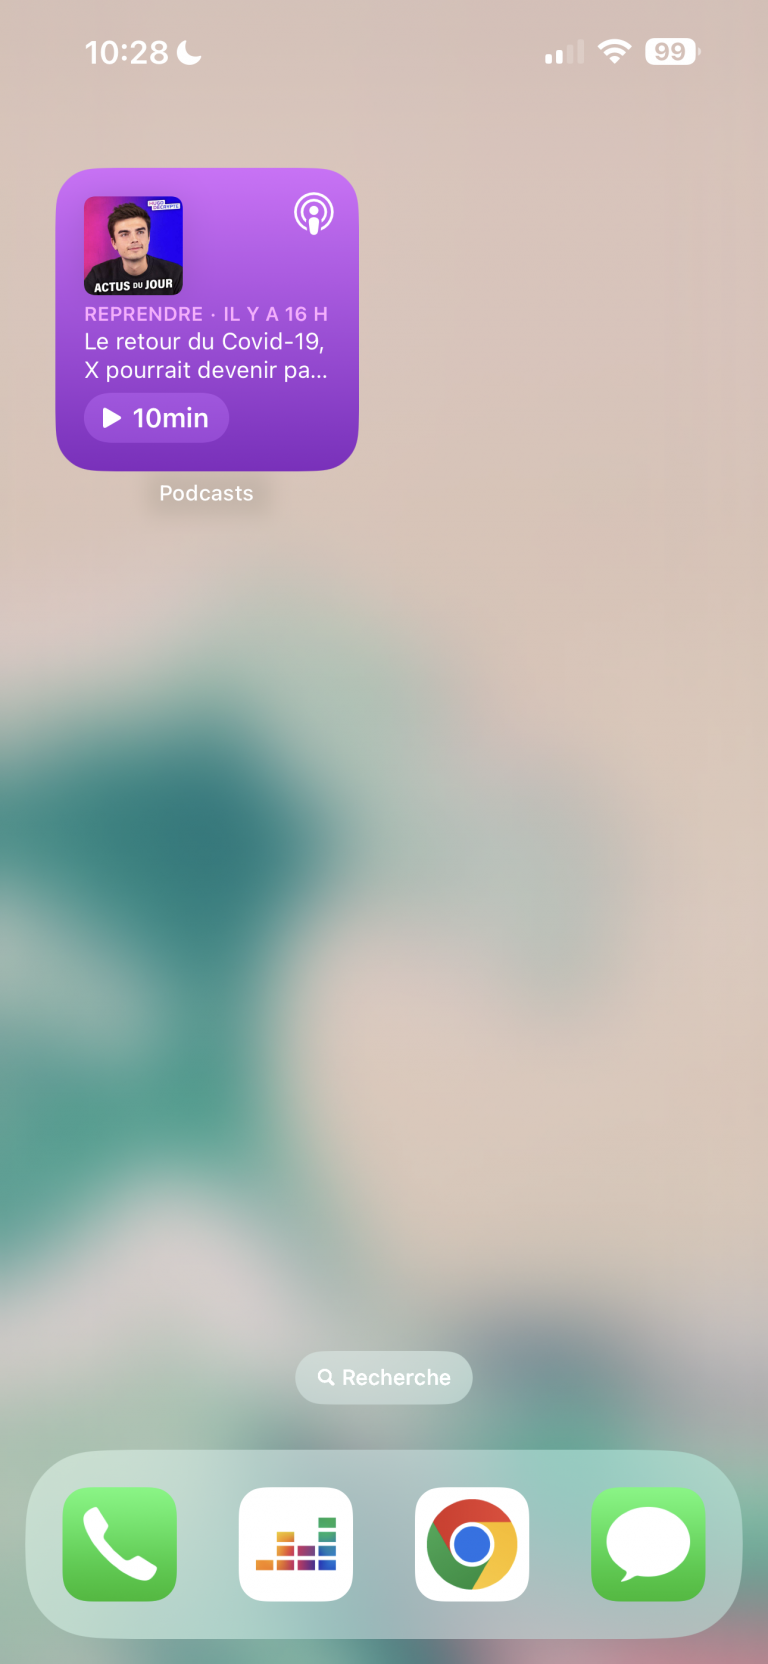 Les widgets interactifs ont débarqué sur iOS 17 et permettent de faire quelque chose de tout nouveau !